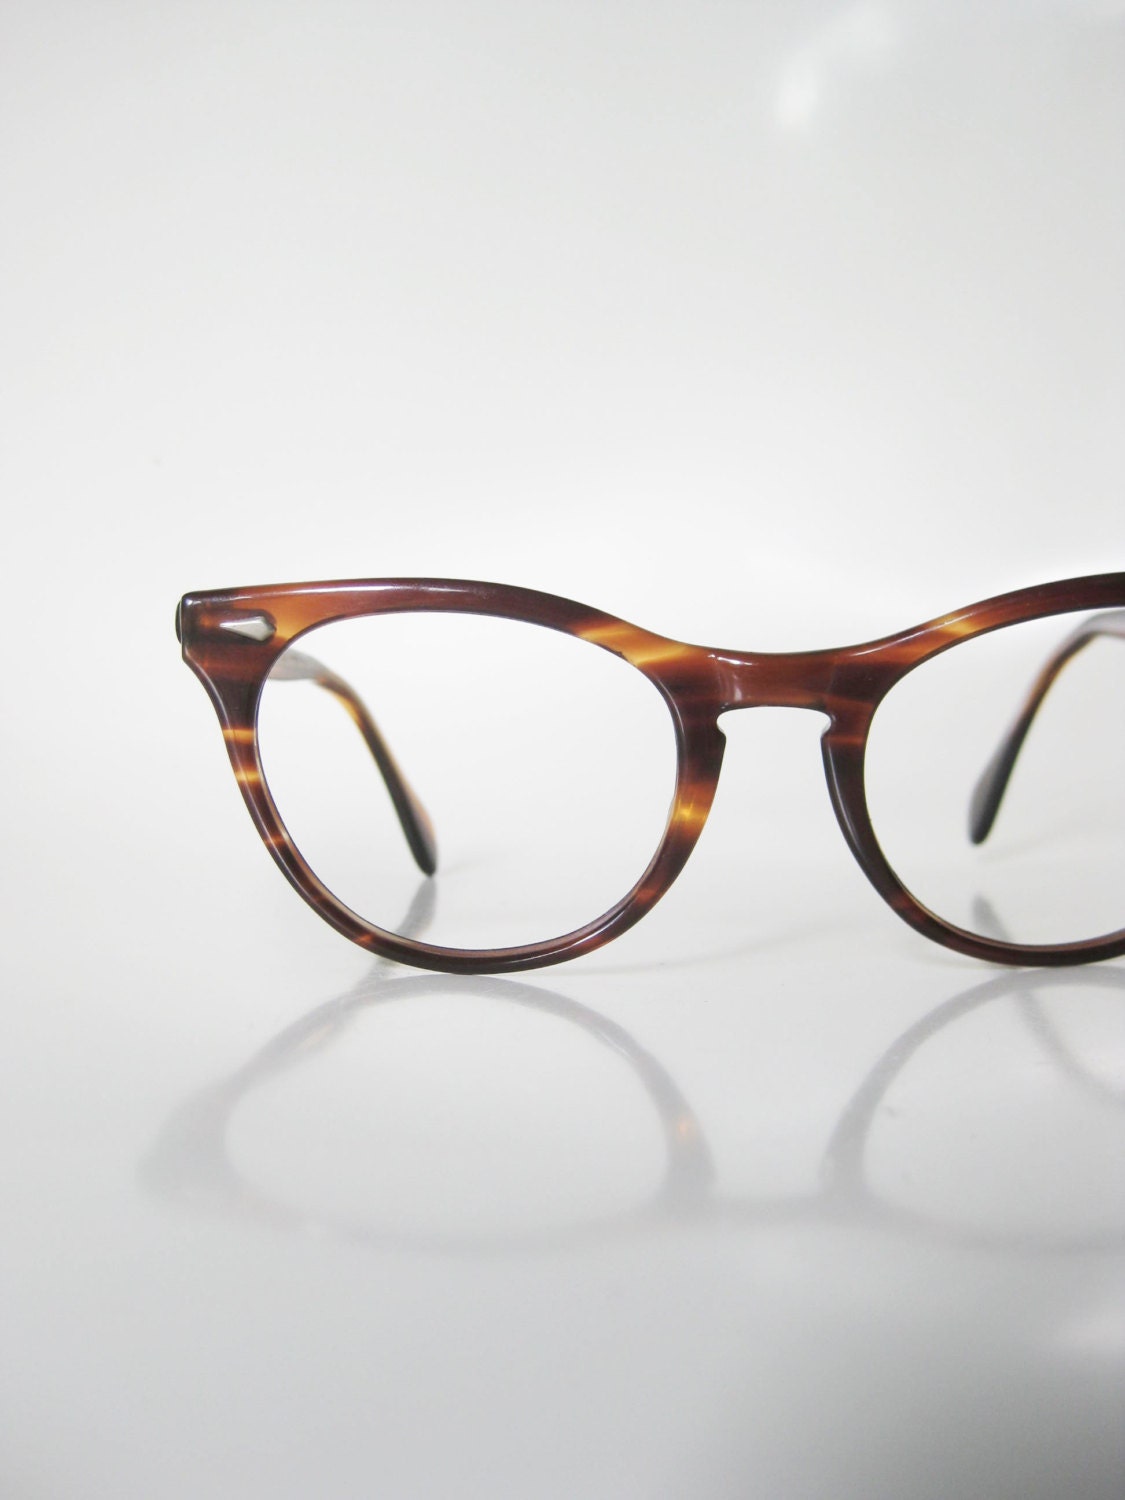 Vintage 1960s American Optical Tortoiseshell Cat Eye Glasses Eyeglasses